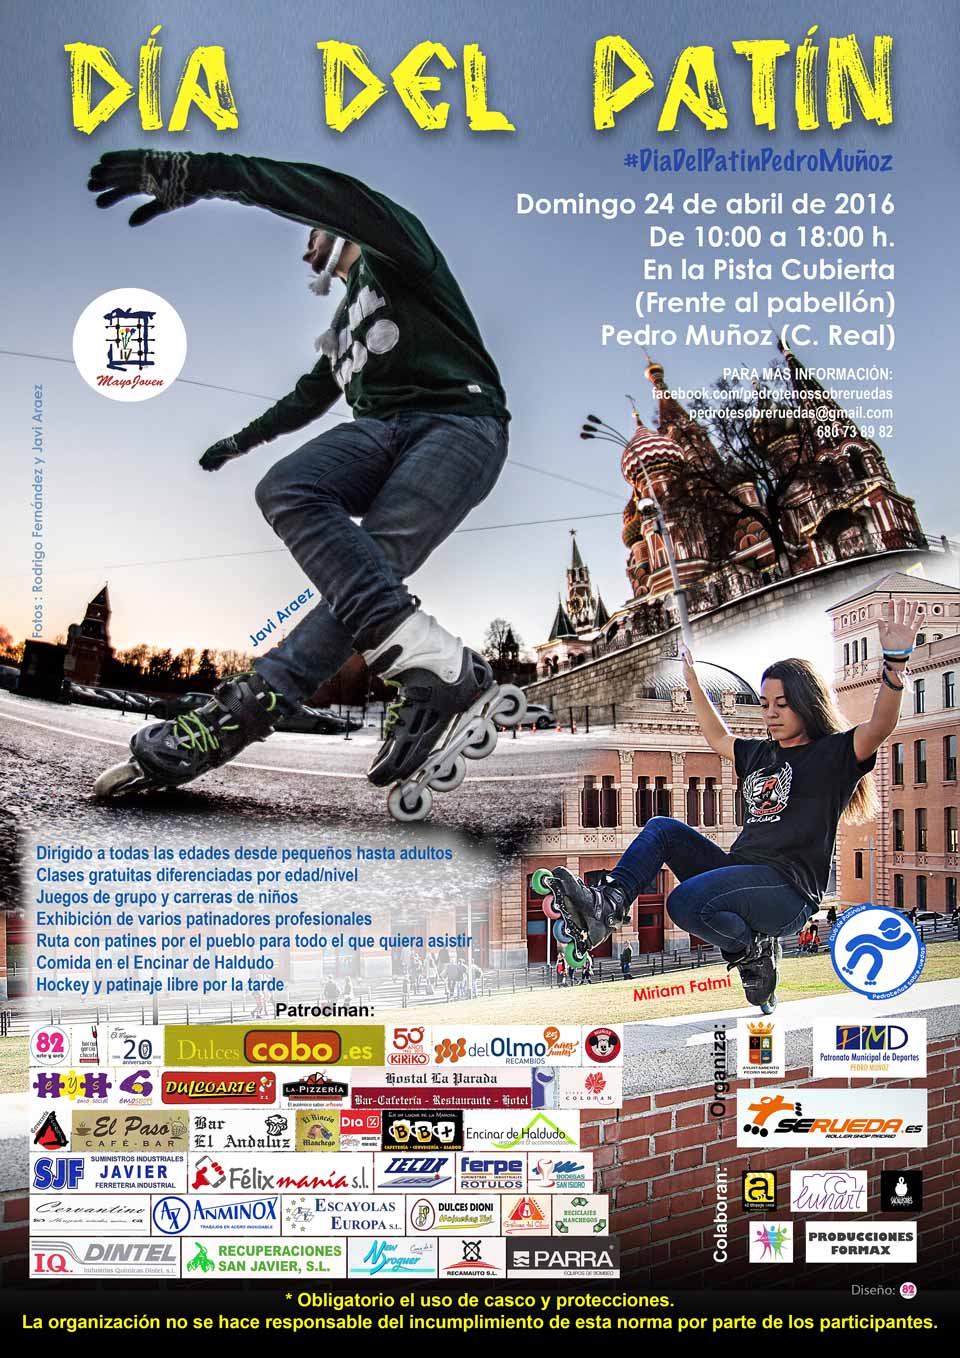 El domingo 24 Pedro Muñoz vivirá el día del patinaje